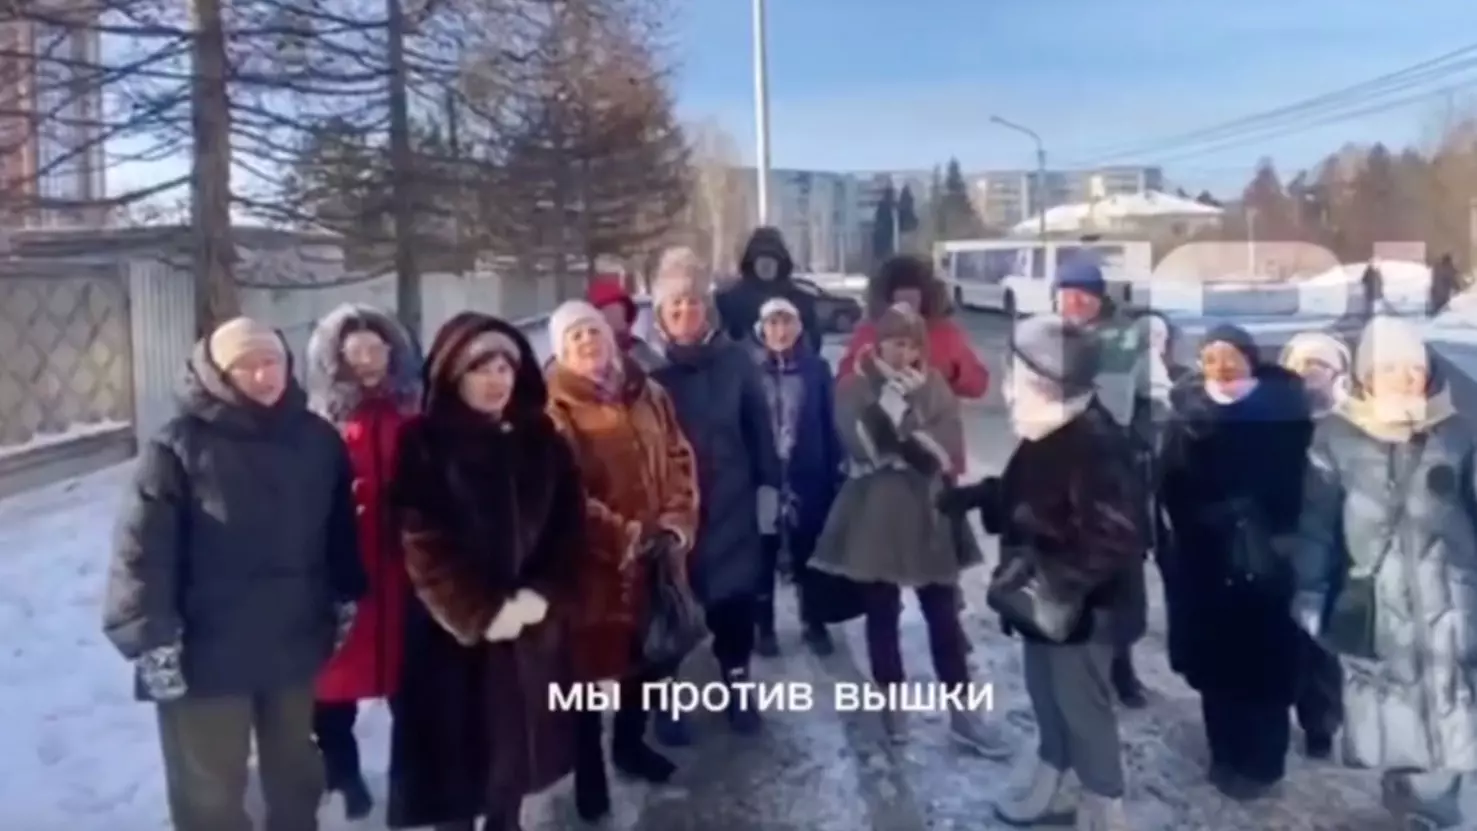 Красноярцы устроили митинг из-за вышки связи в Академгородке